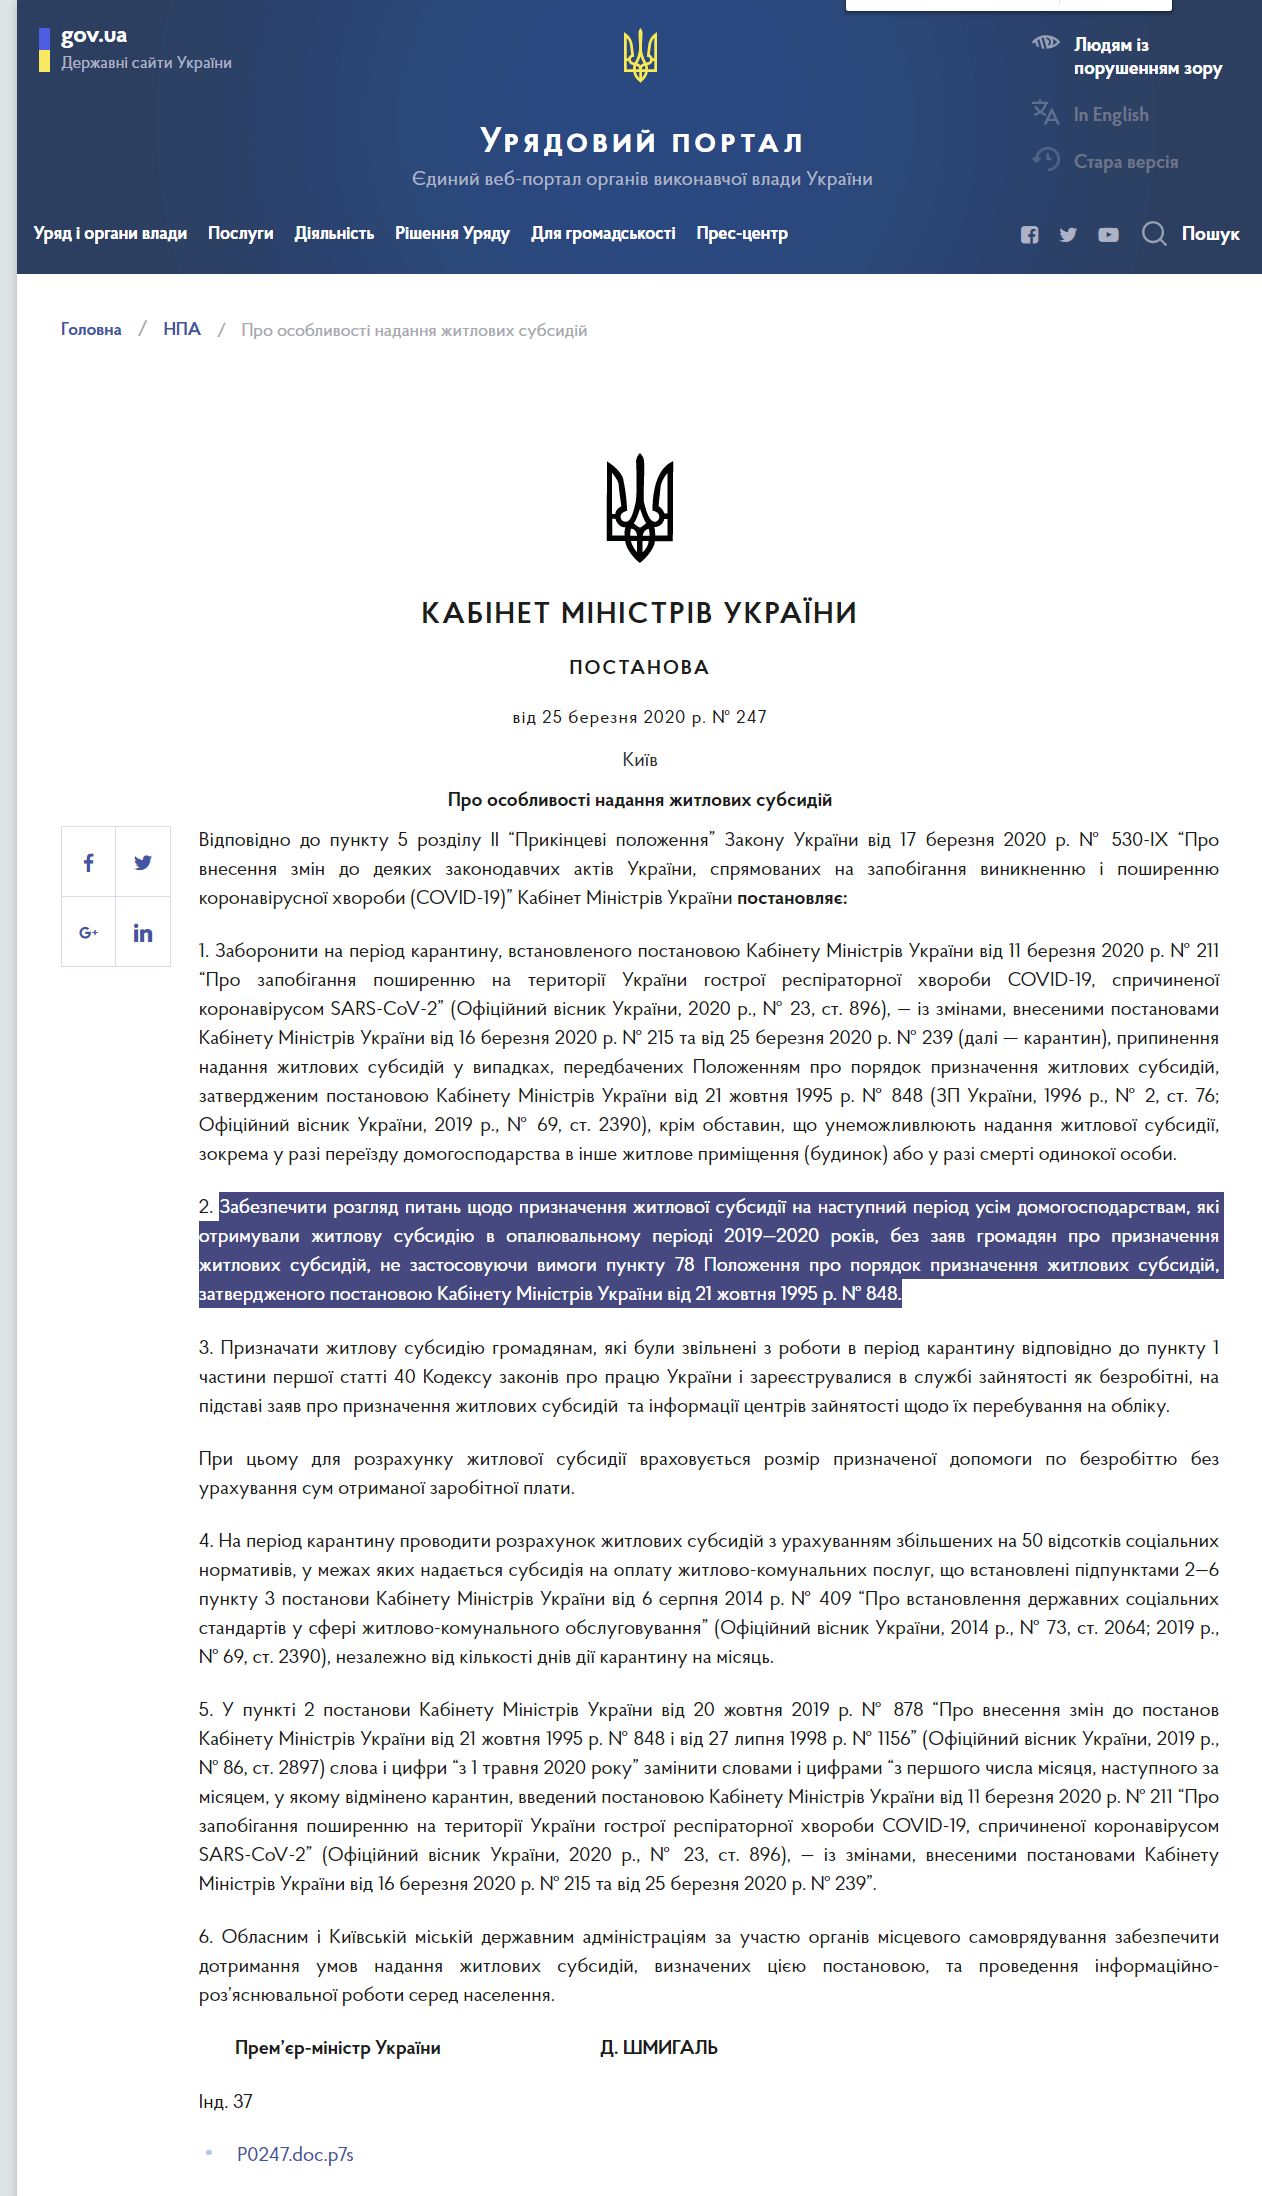 https://www.kmu.gov.ua/npas/pro-osoblivosti-nadannya-zhitlovih-subsidij-247250320